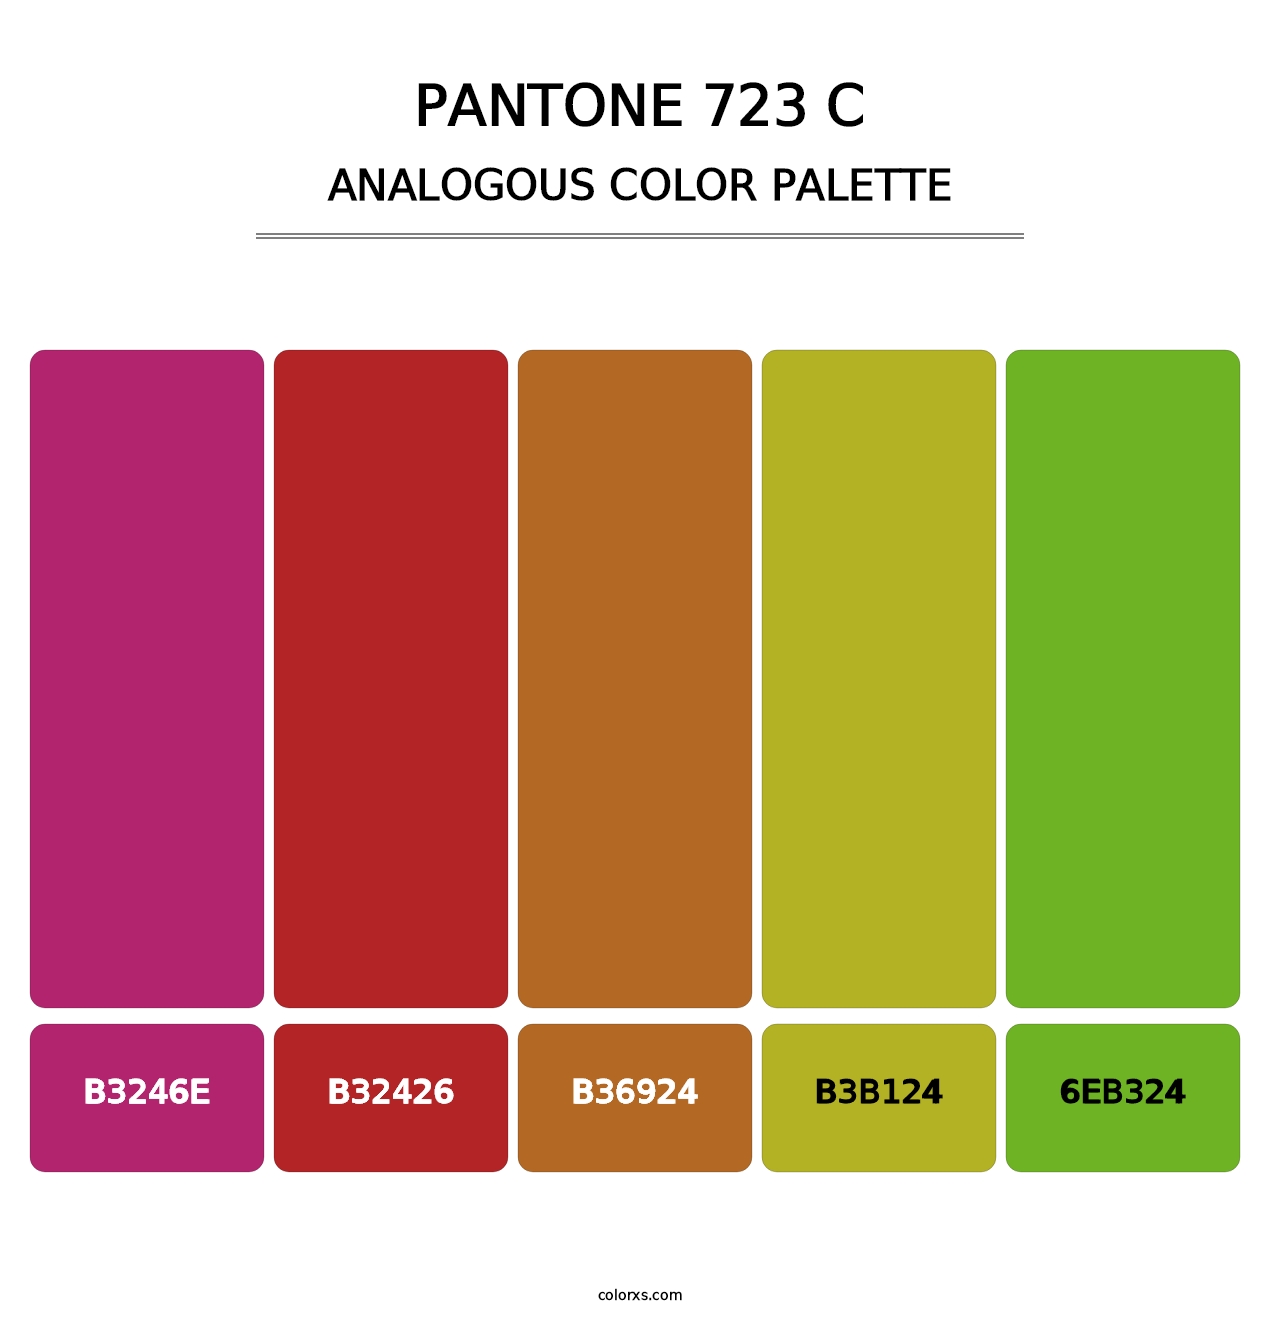 PANTONE 723 C - Analogous Color Palette